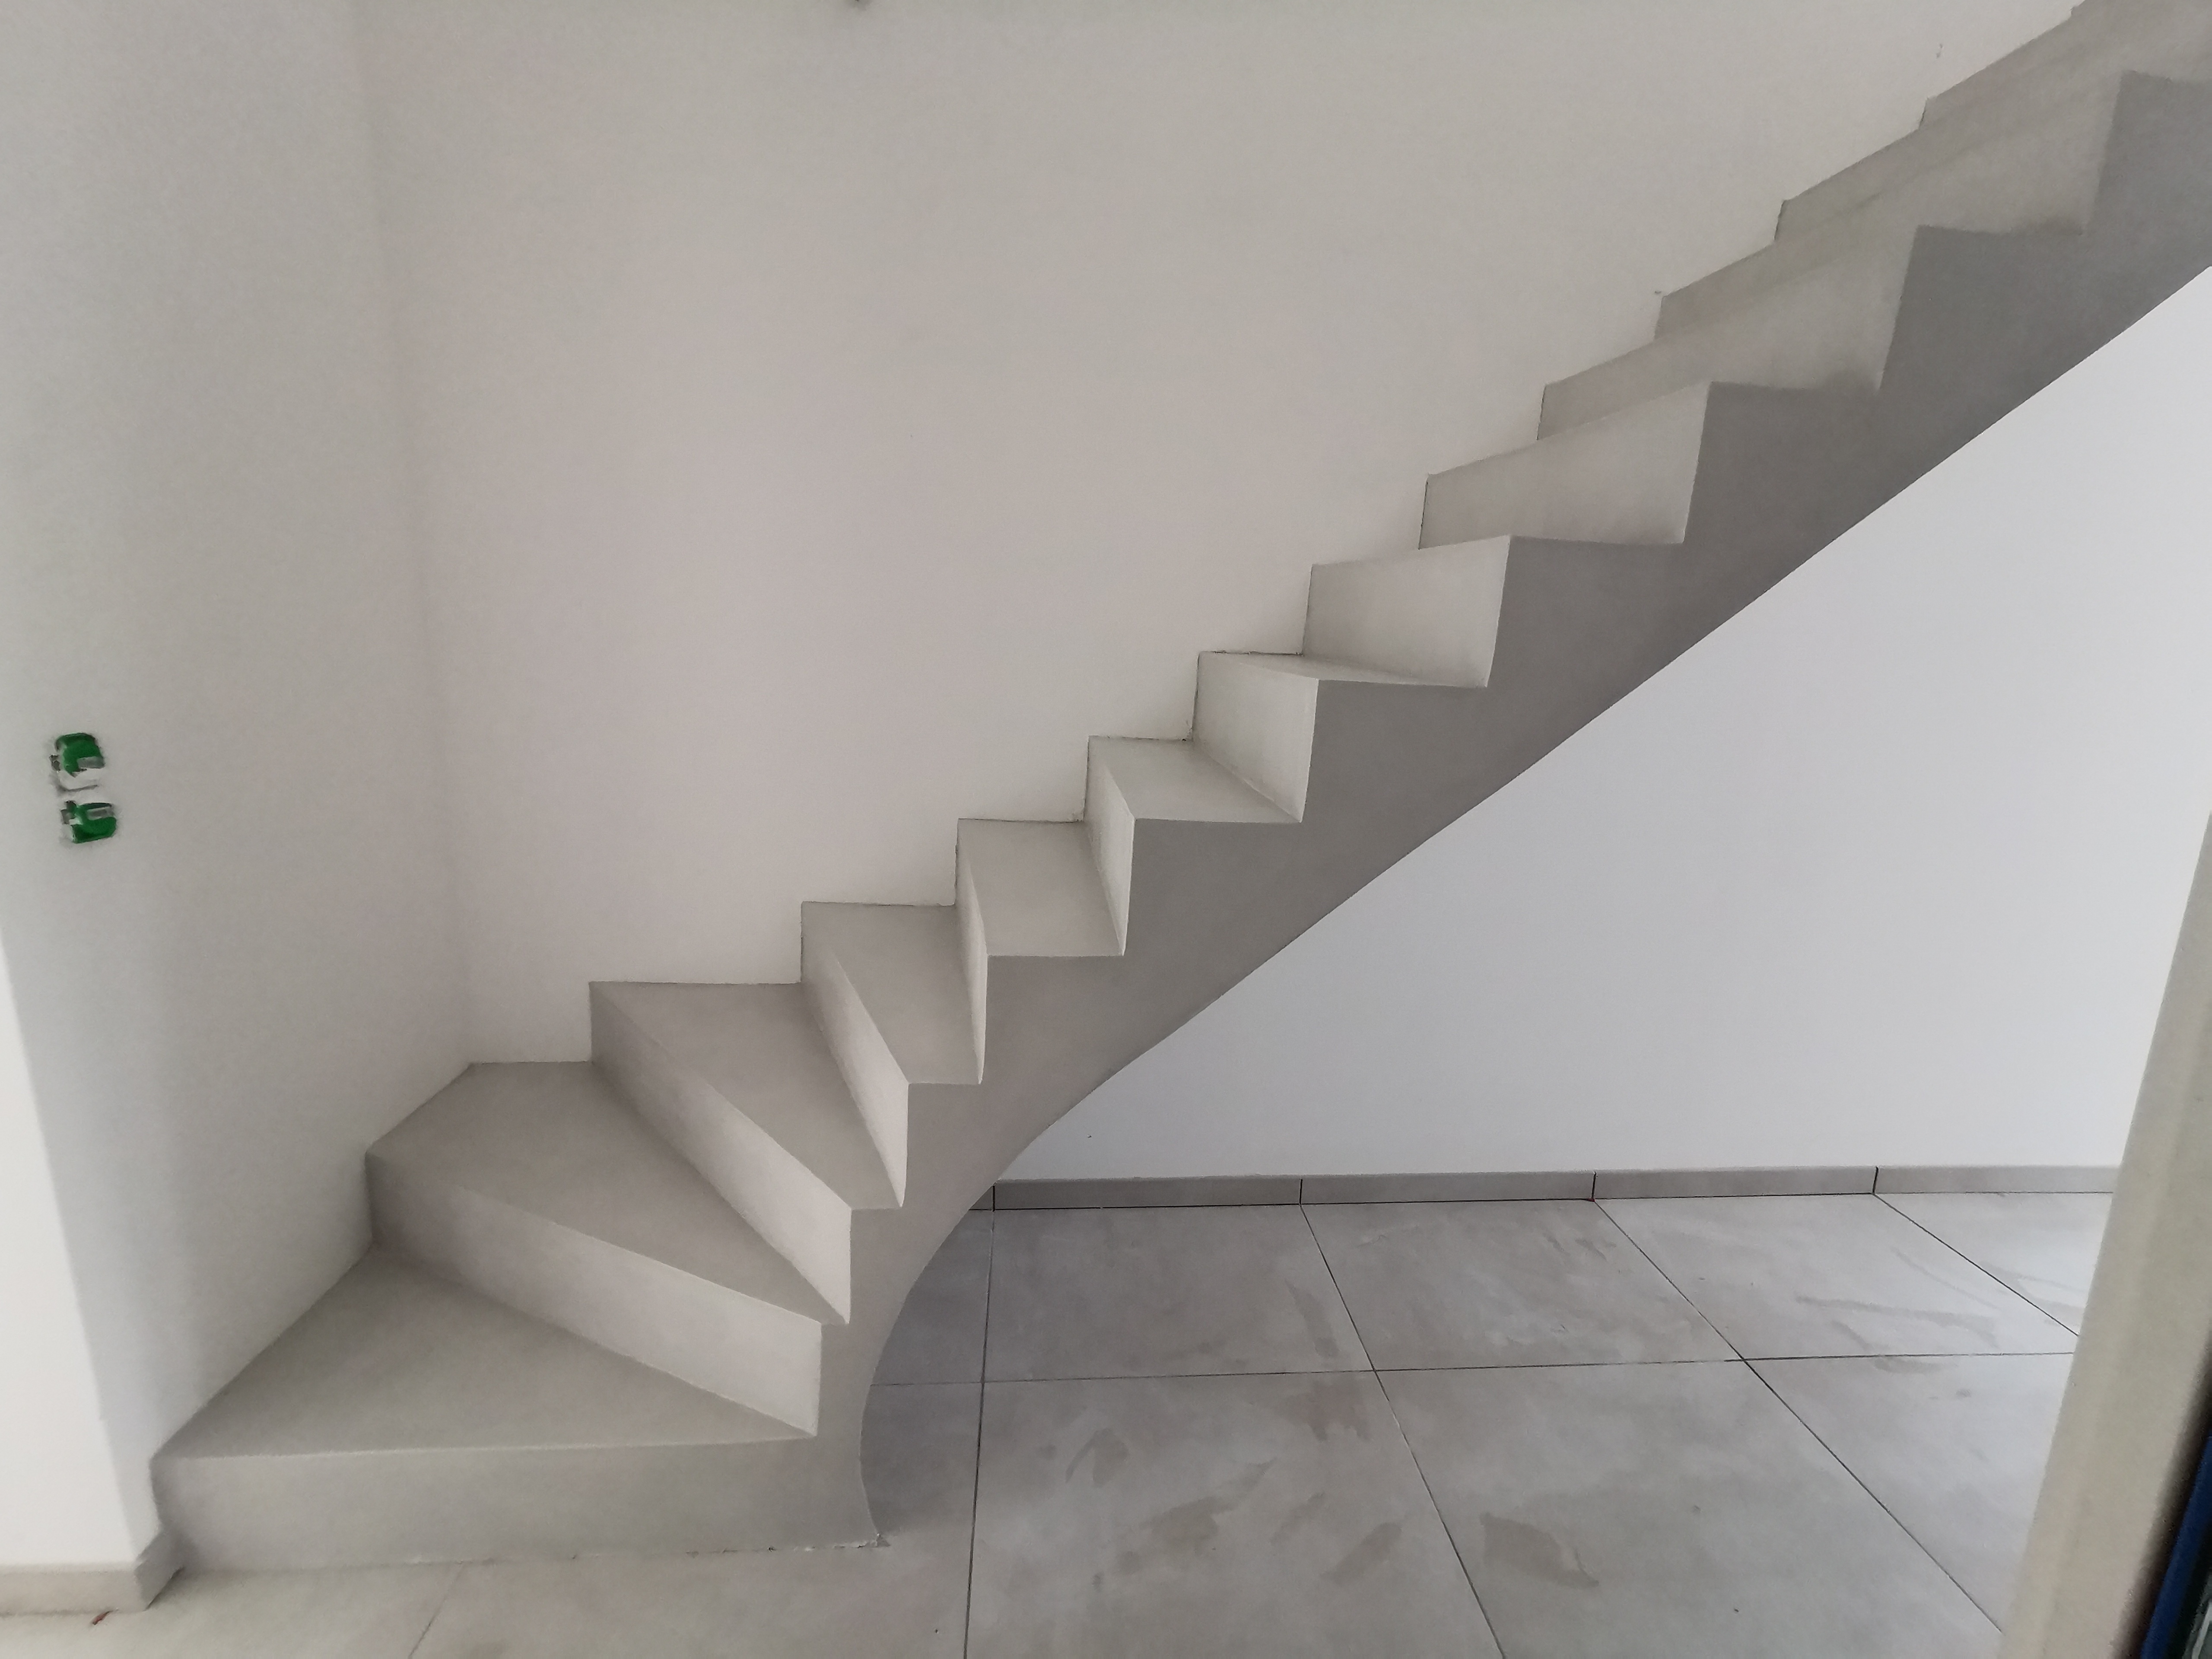 bel escalier à paillasse deux quart tournant en béton ciré vernis mat couleur gris cendré Blanquefort proche de Bordeaux en aquitaine pour un constructeur